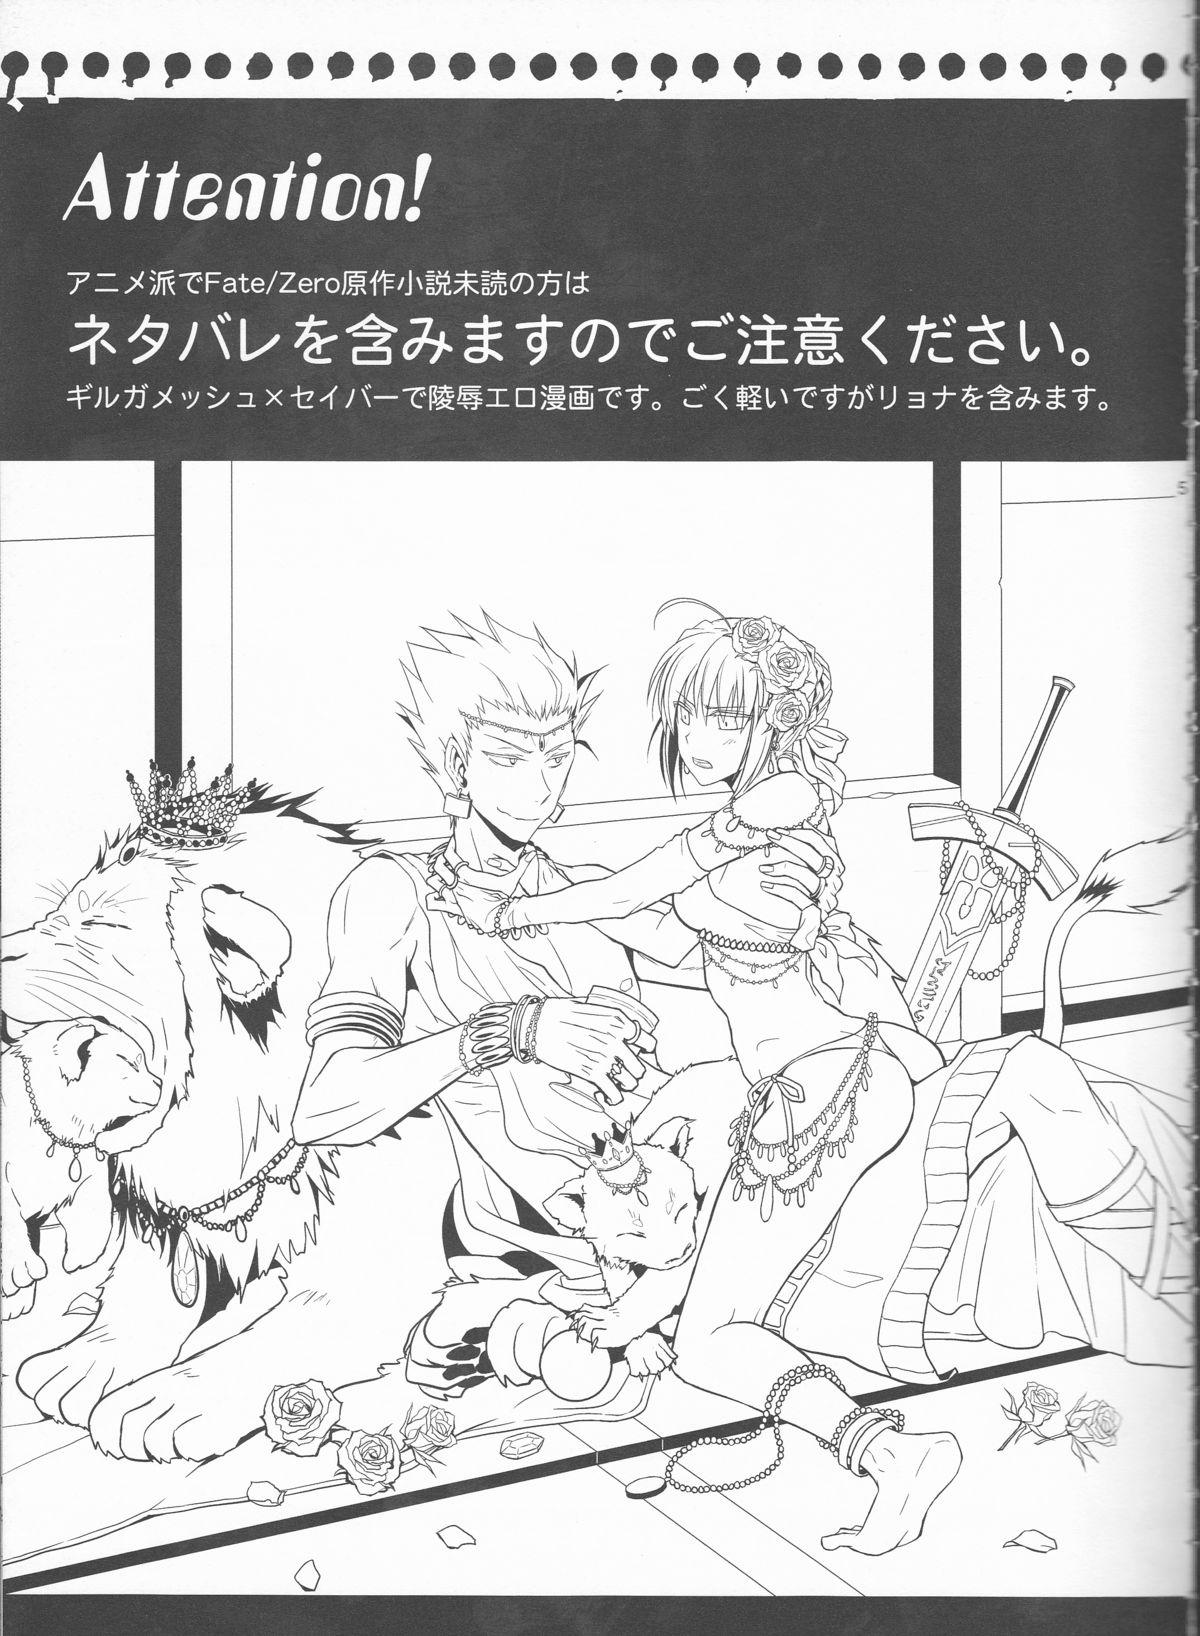 Asia Kairaku no Za - Fate zero Prima - Page 2